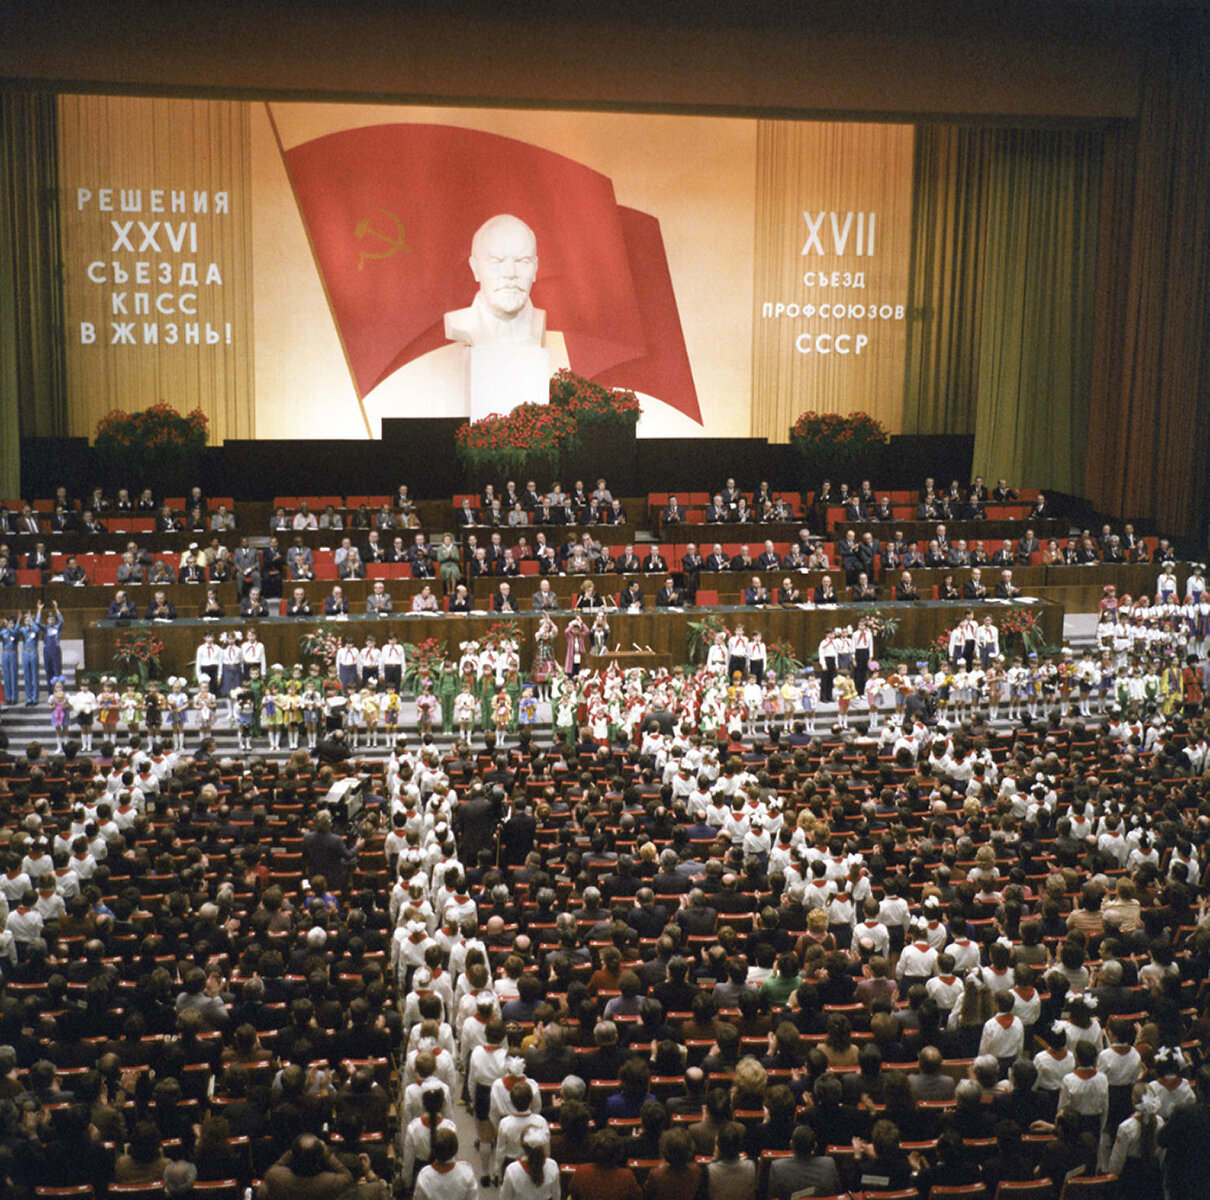 <p>XVII съезд профсоюзов СССР в Москве, 1982</p>